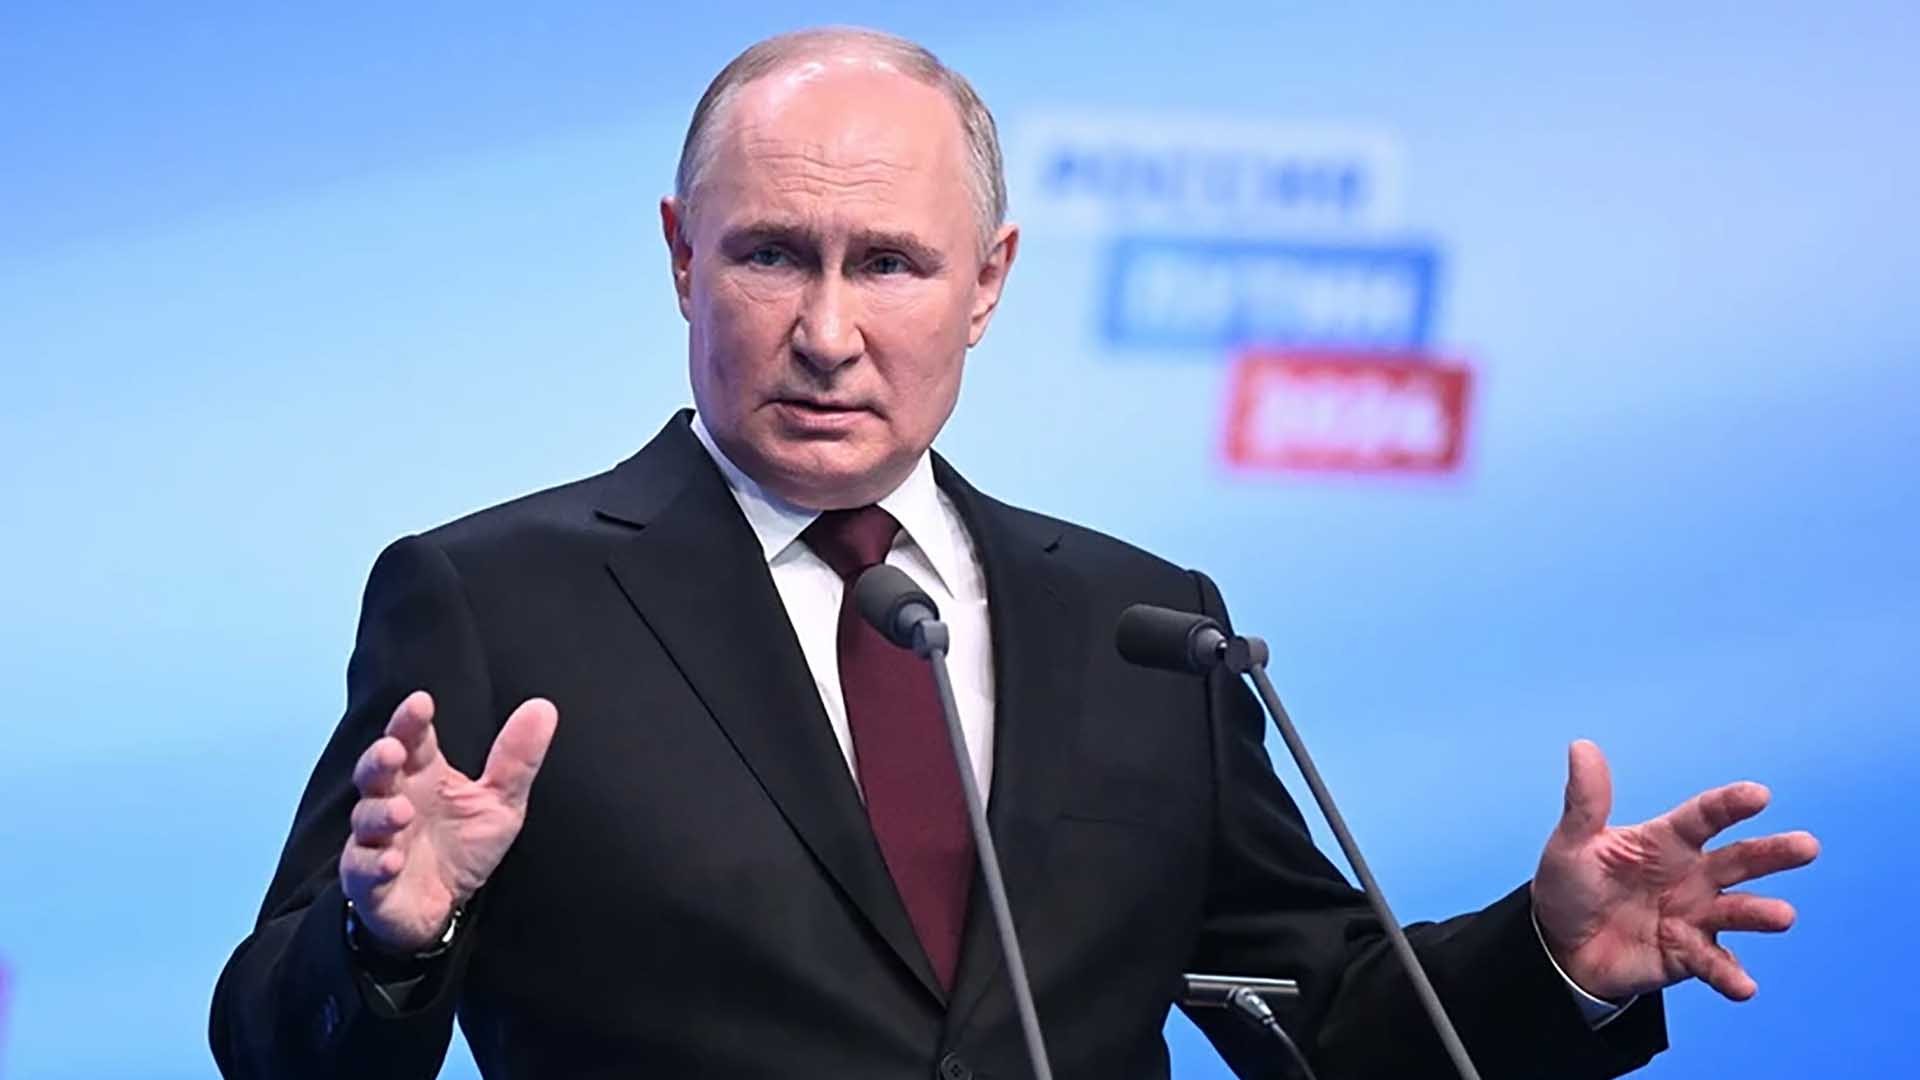 Tổng Bí thư Nguyễn Phú Trọng chúc mừng ông Vladimir Putin nhân dịp được bầu lại làm Tổng thống Liên bang Nga